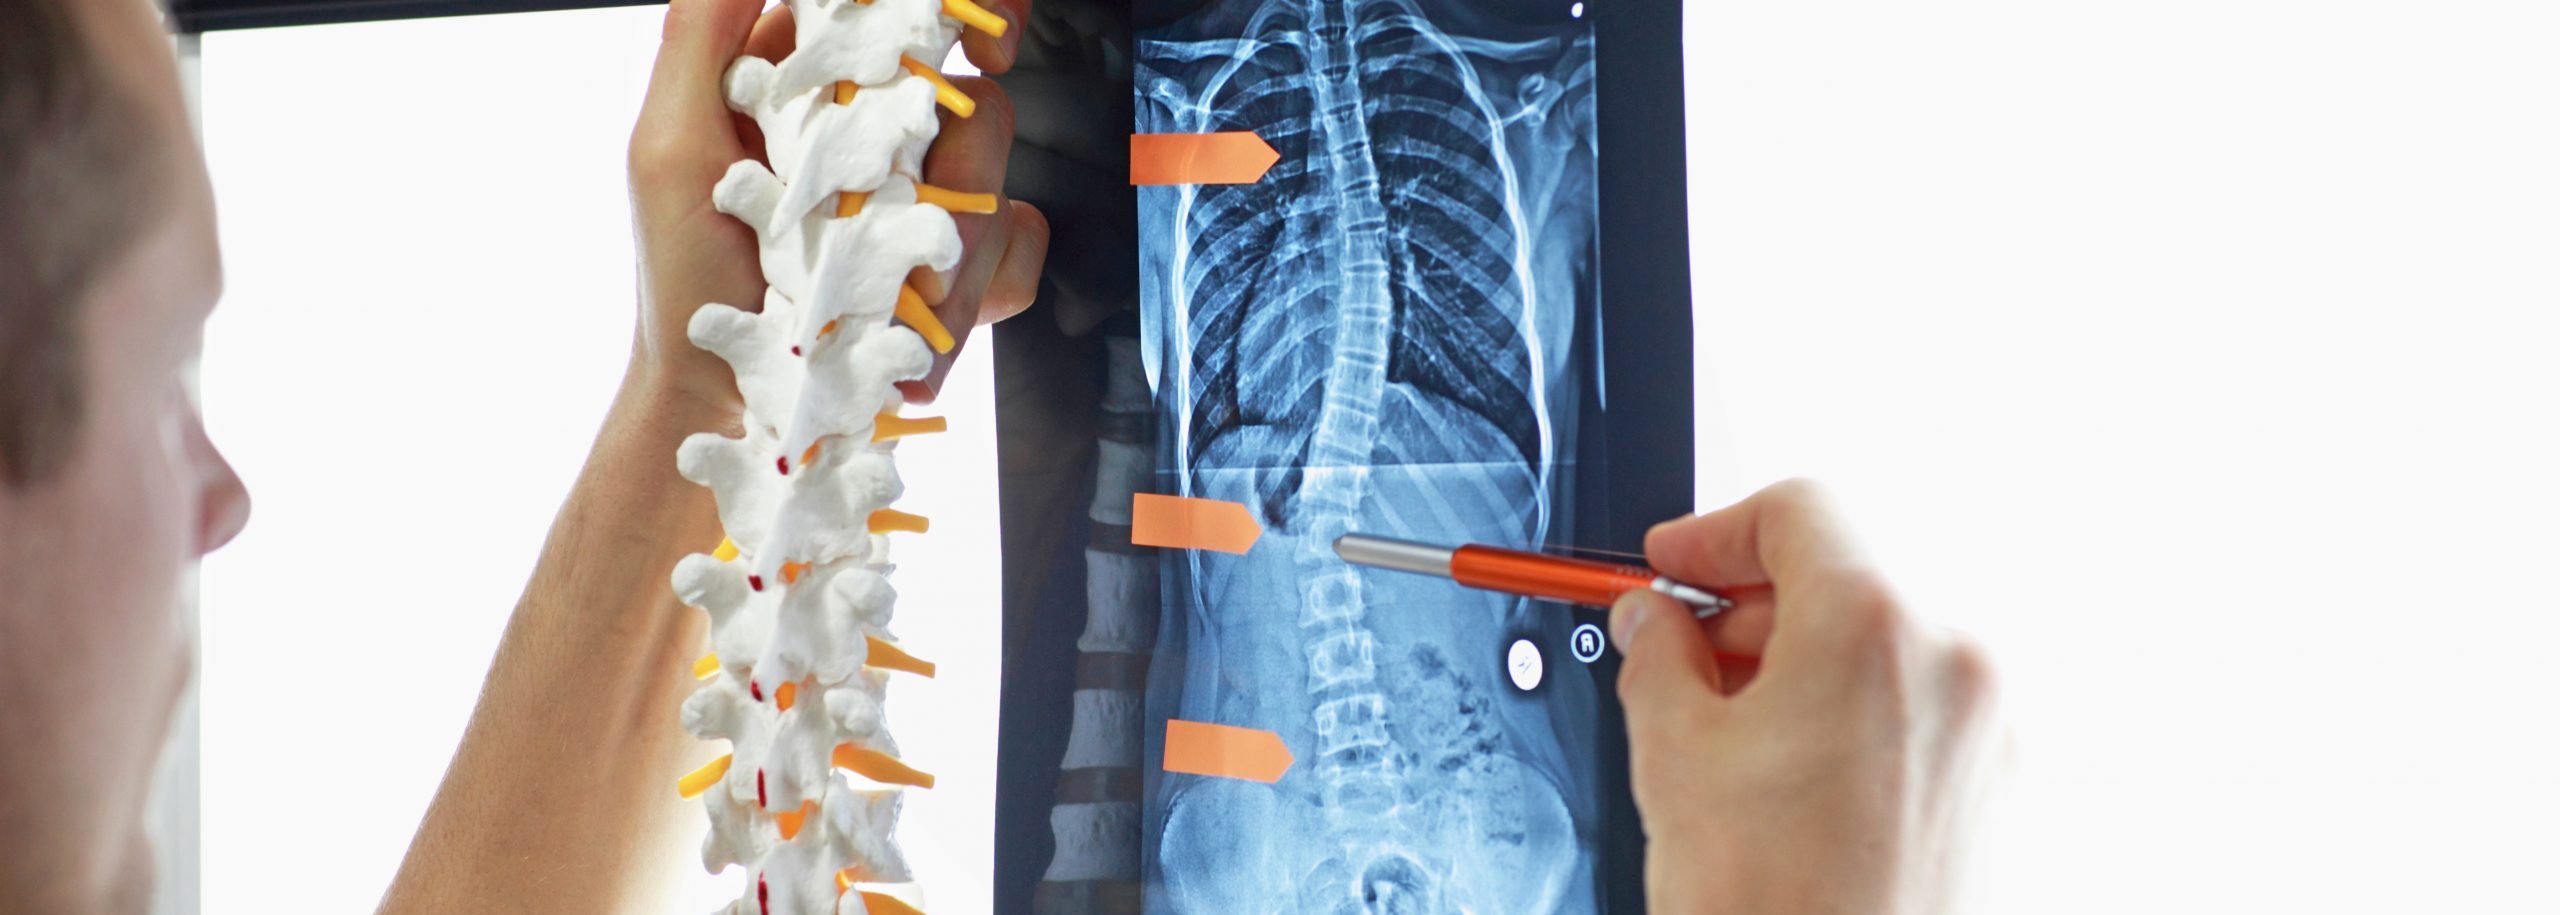 Skoliose Diagnose eines Orthopäden mittels Modell der Wirbelsäule und MRT-/Röntgenbild